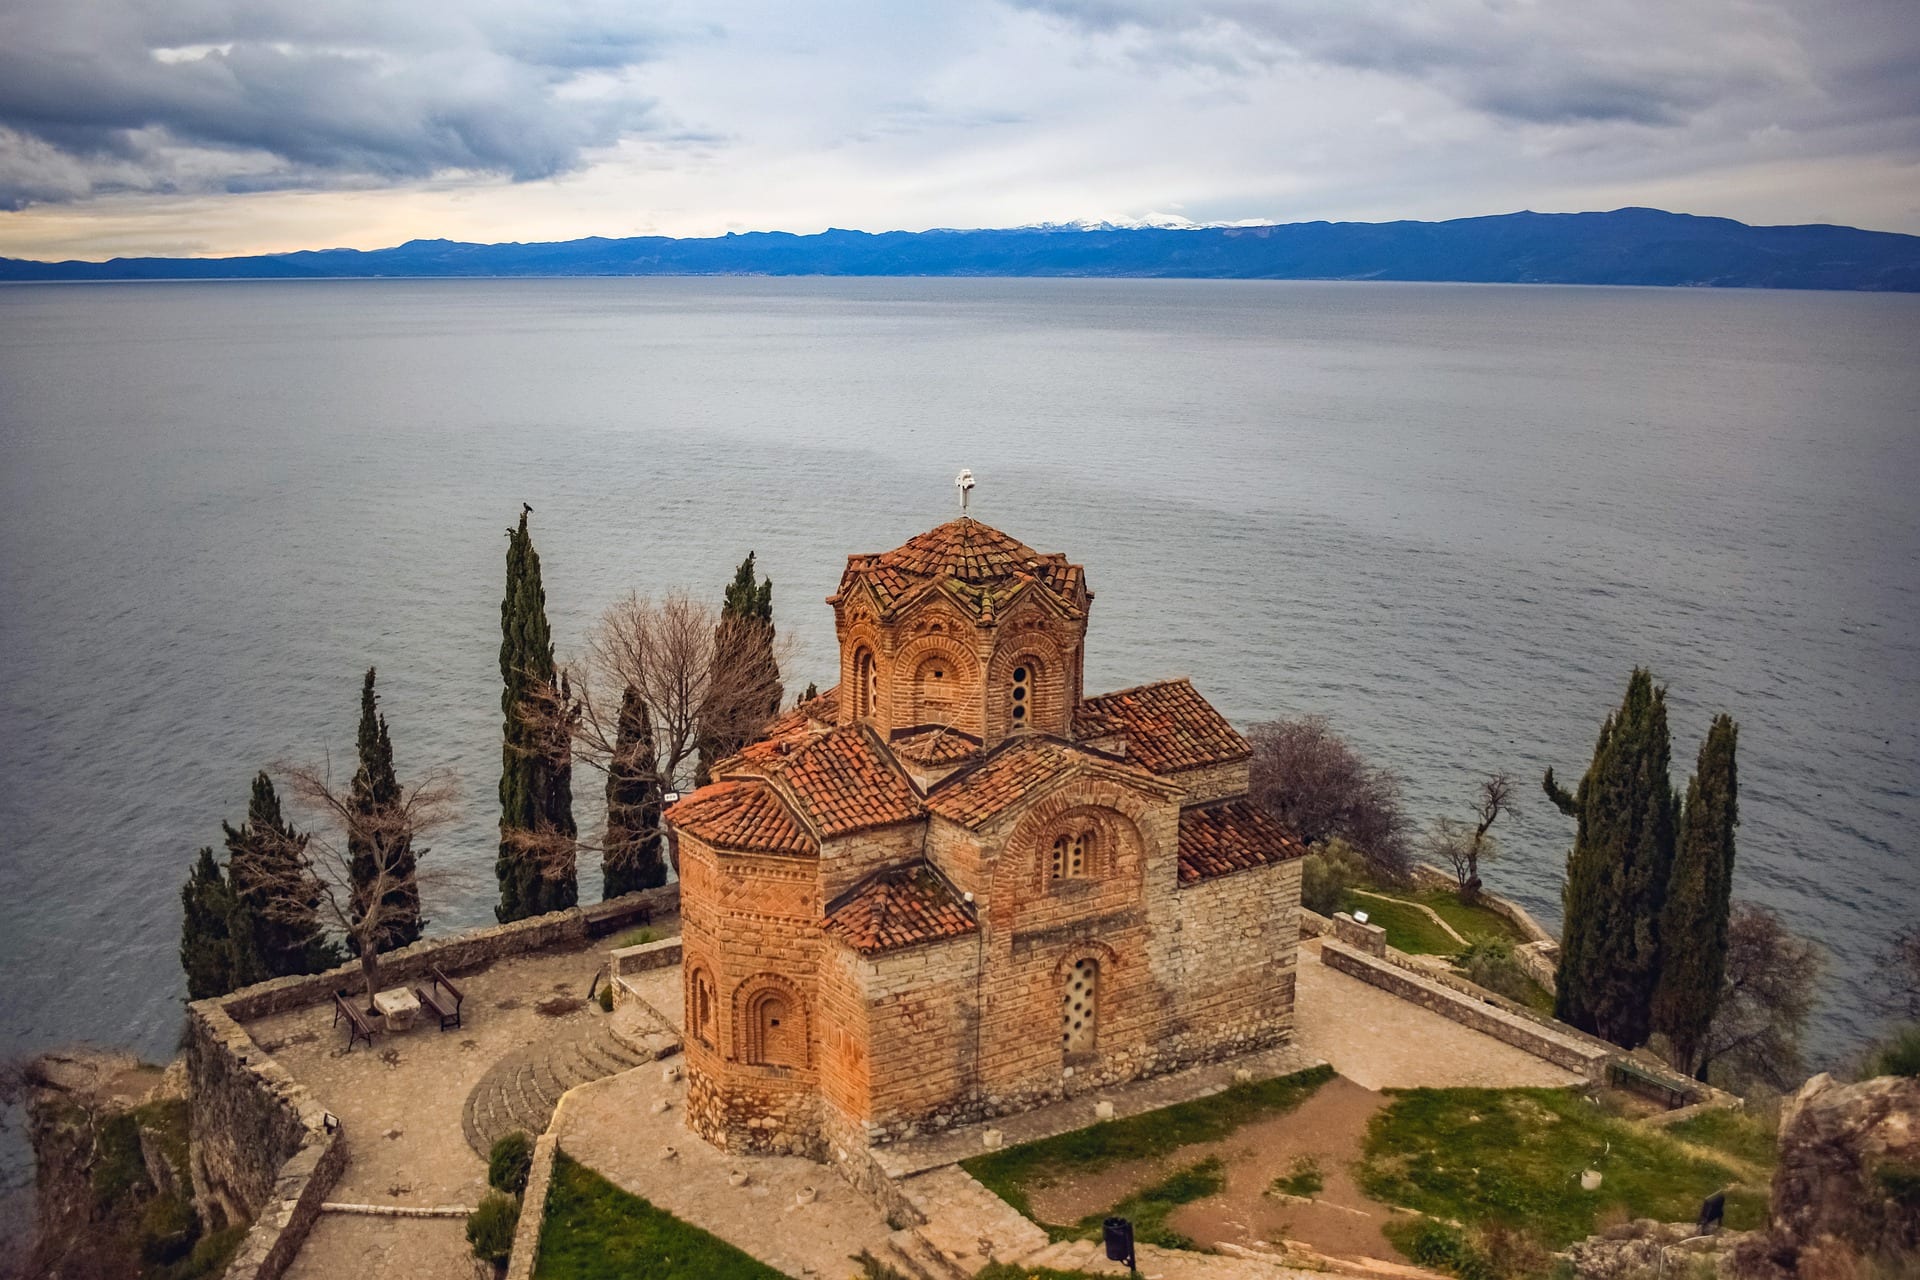 Ohrid makedonija crkva
